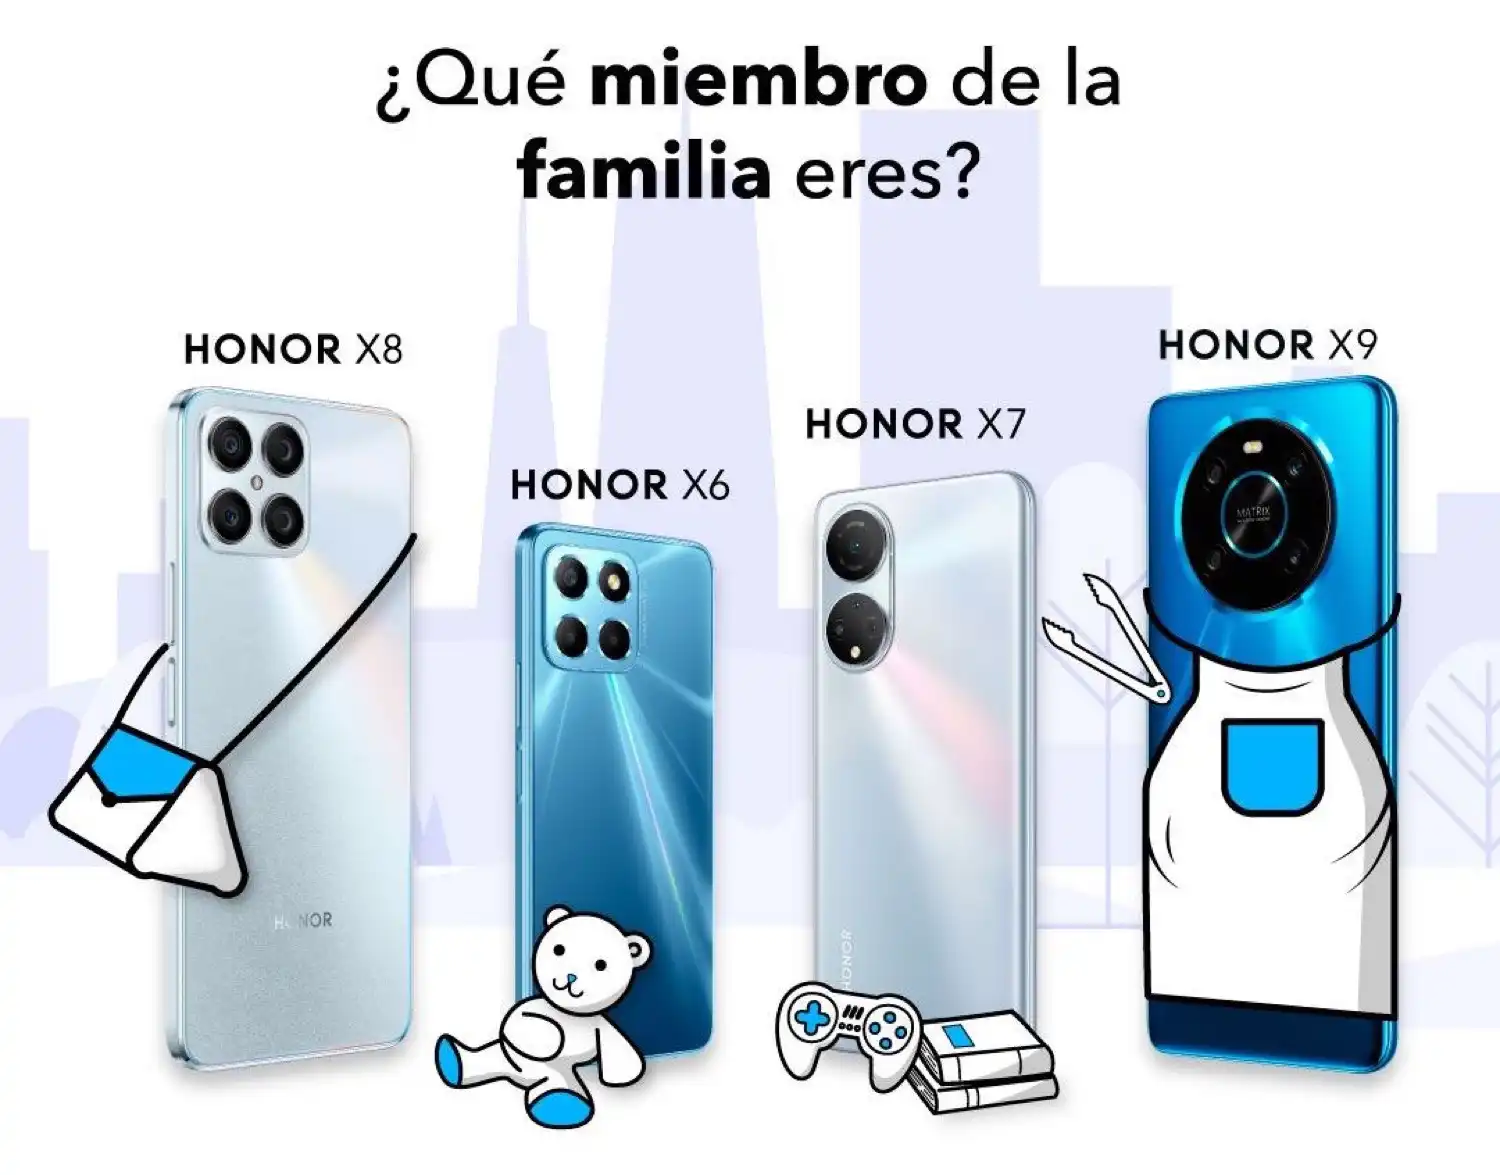 El smartphone Honor ideal para cada miembro de la familia